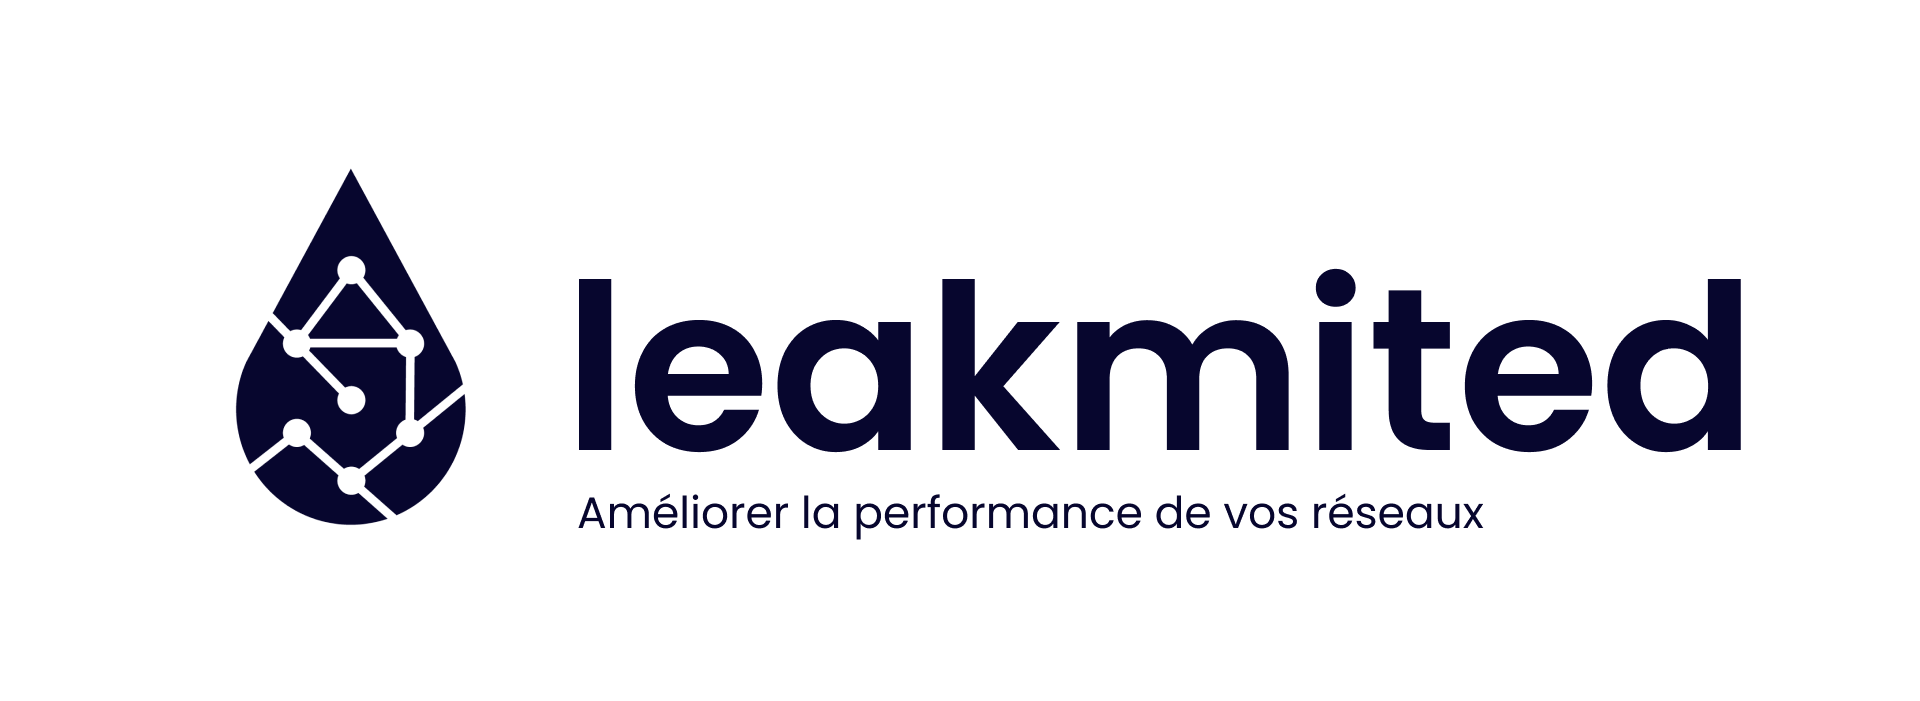 logo LEAKMITED